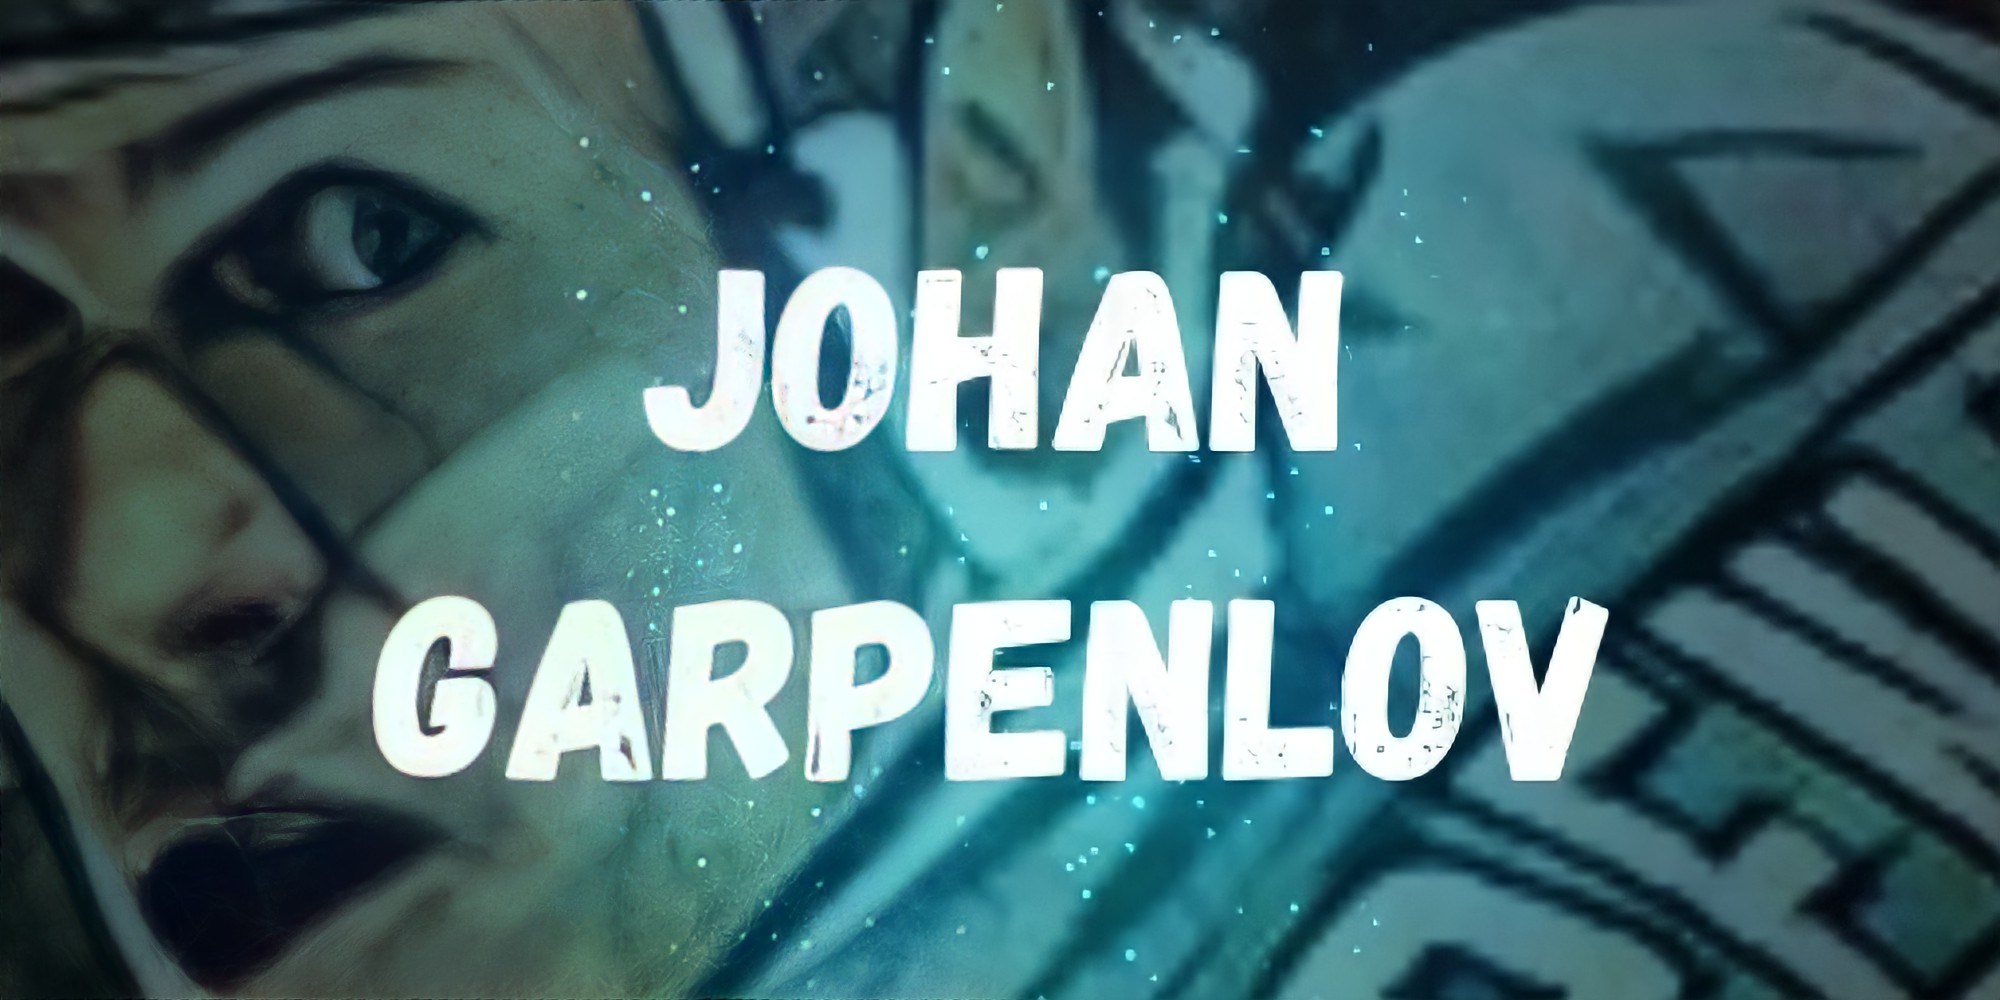 San Jose Sharks Johan Garpenlov